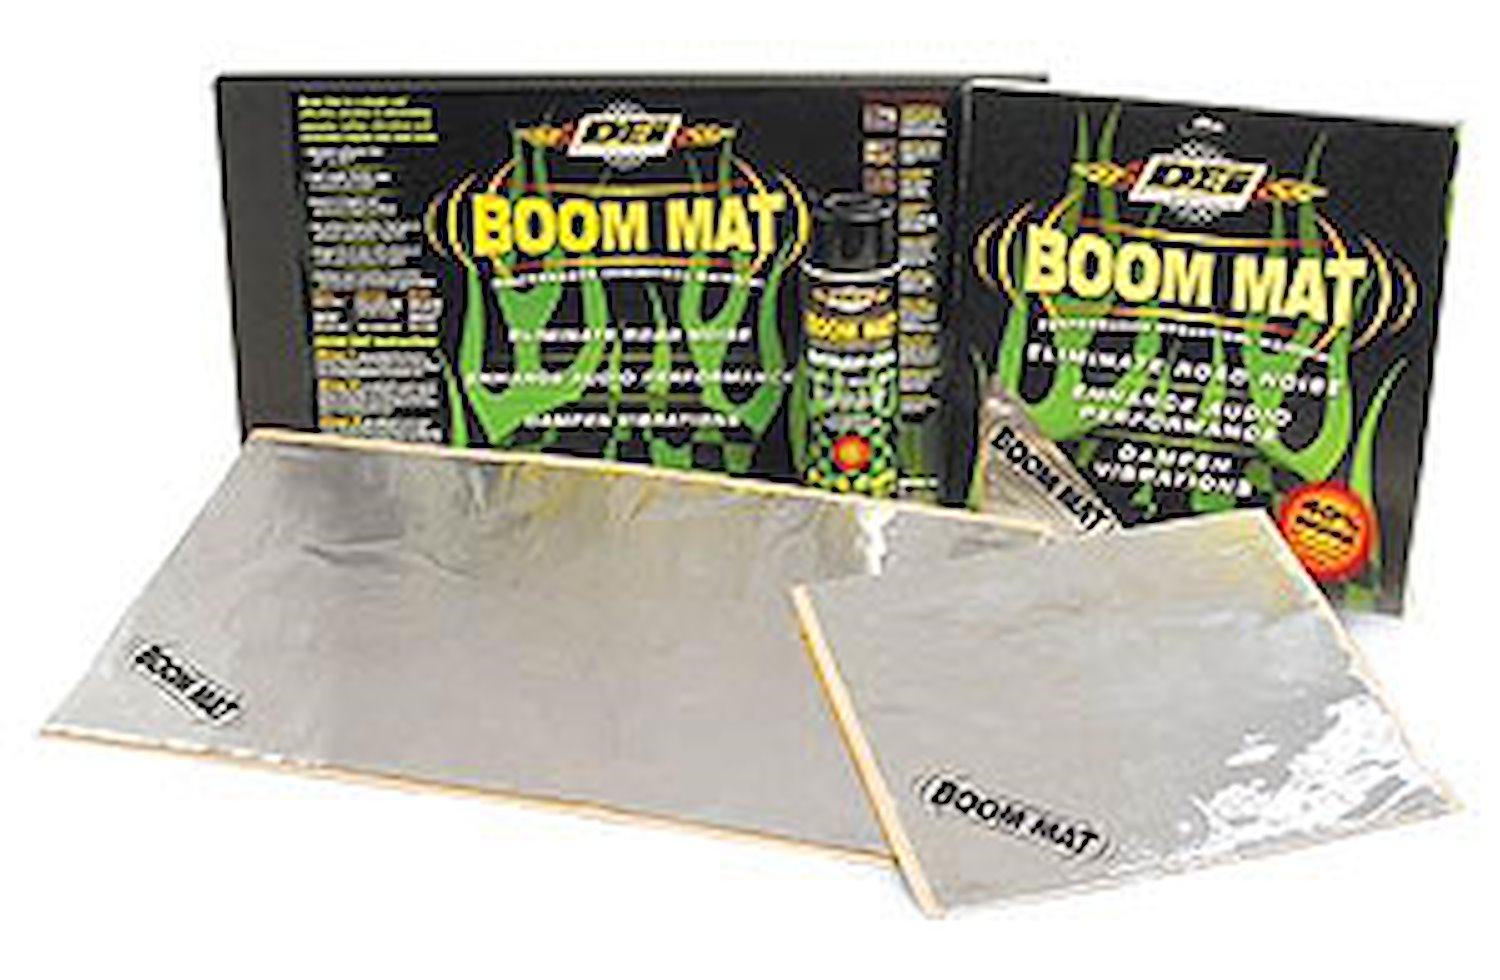 10-Pack Boom Mat Ten 24" x 12.5" Sheets (20.8 sq/ft)